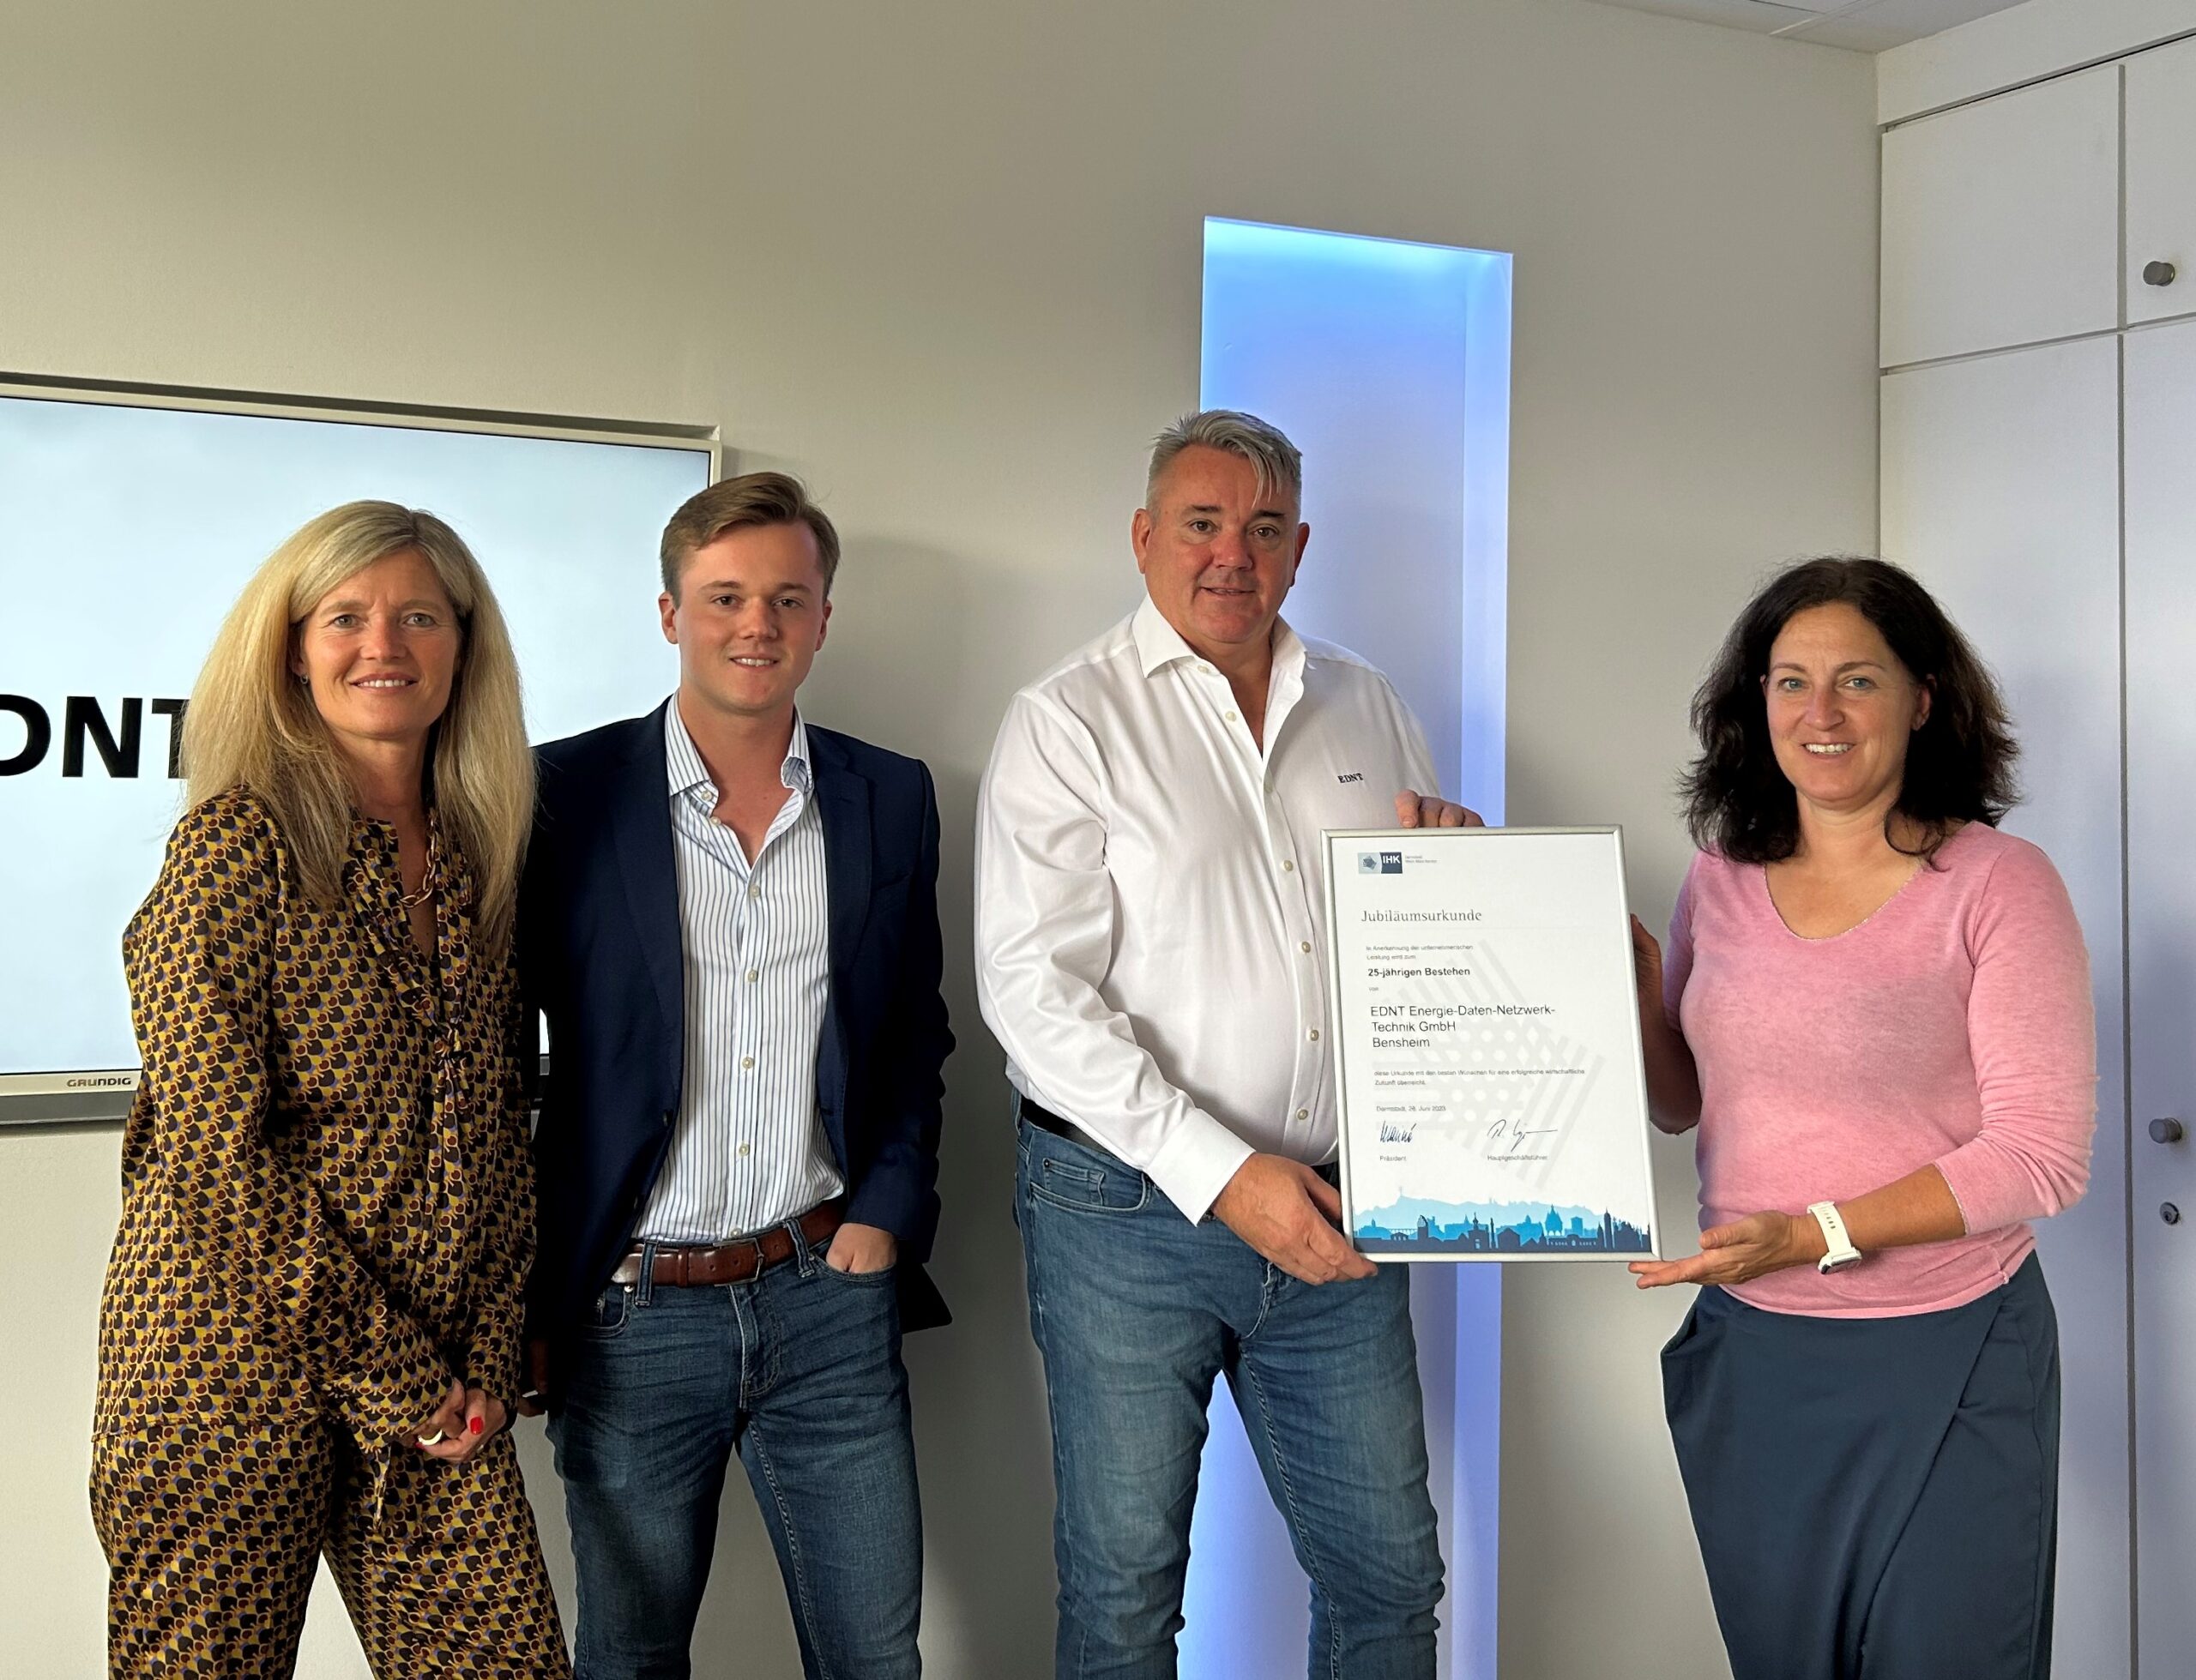 IHK gratuliert Bensheimer Familienunternehmen EDNT zum 25-jährigen Jubiläum / Spezialist für Komplettlösungen in IT und Telekommunikation